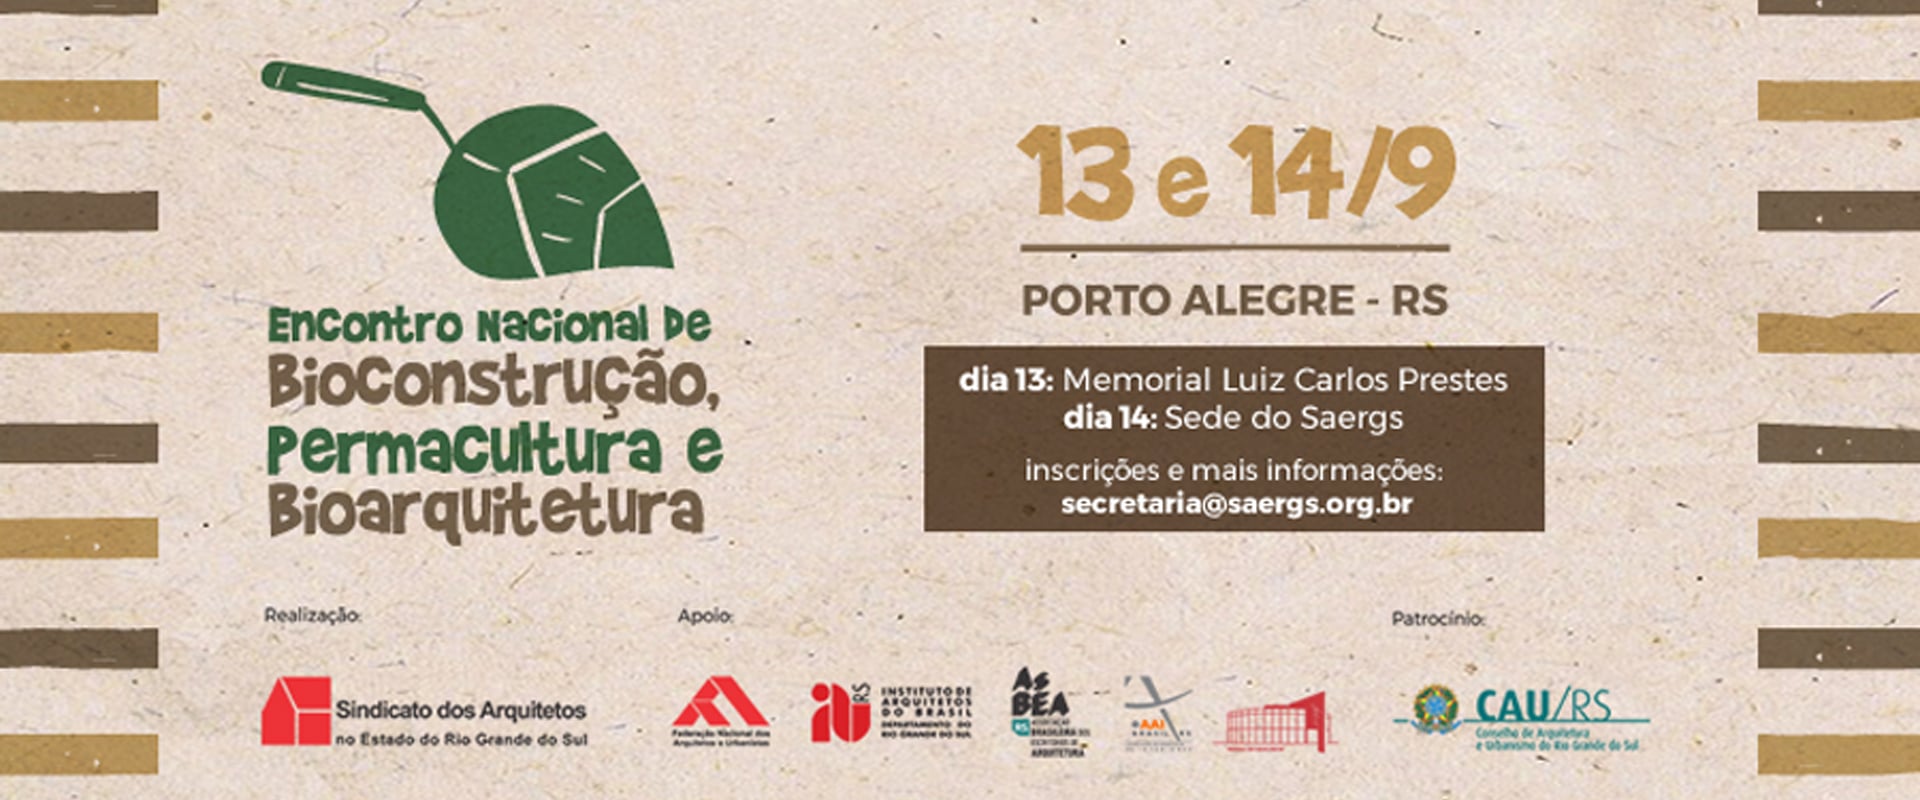 Bioconstrução, permacultura e bioarquitetura são temas de encontro nacional em Porto Alegre